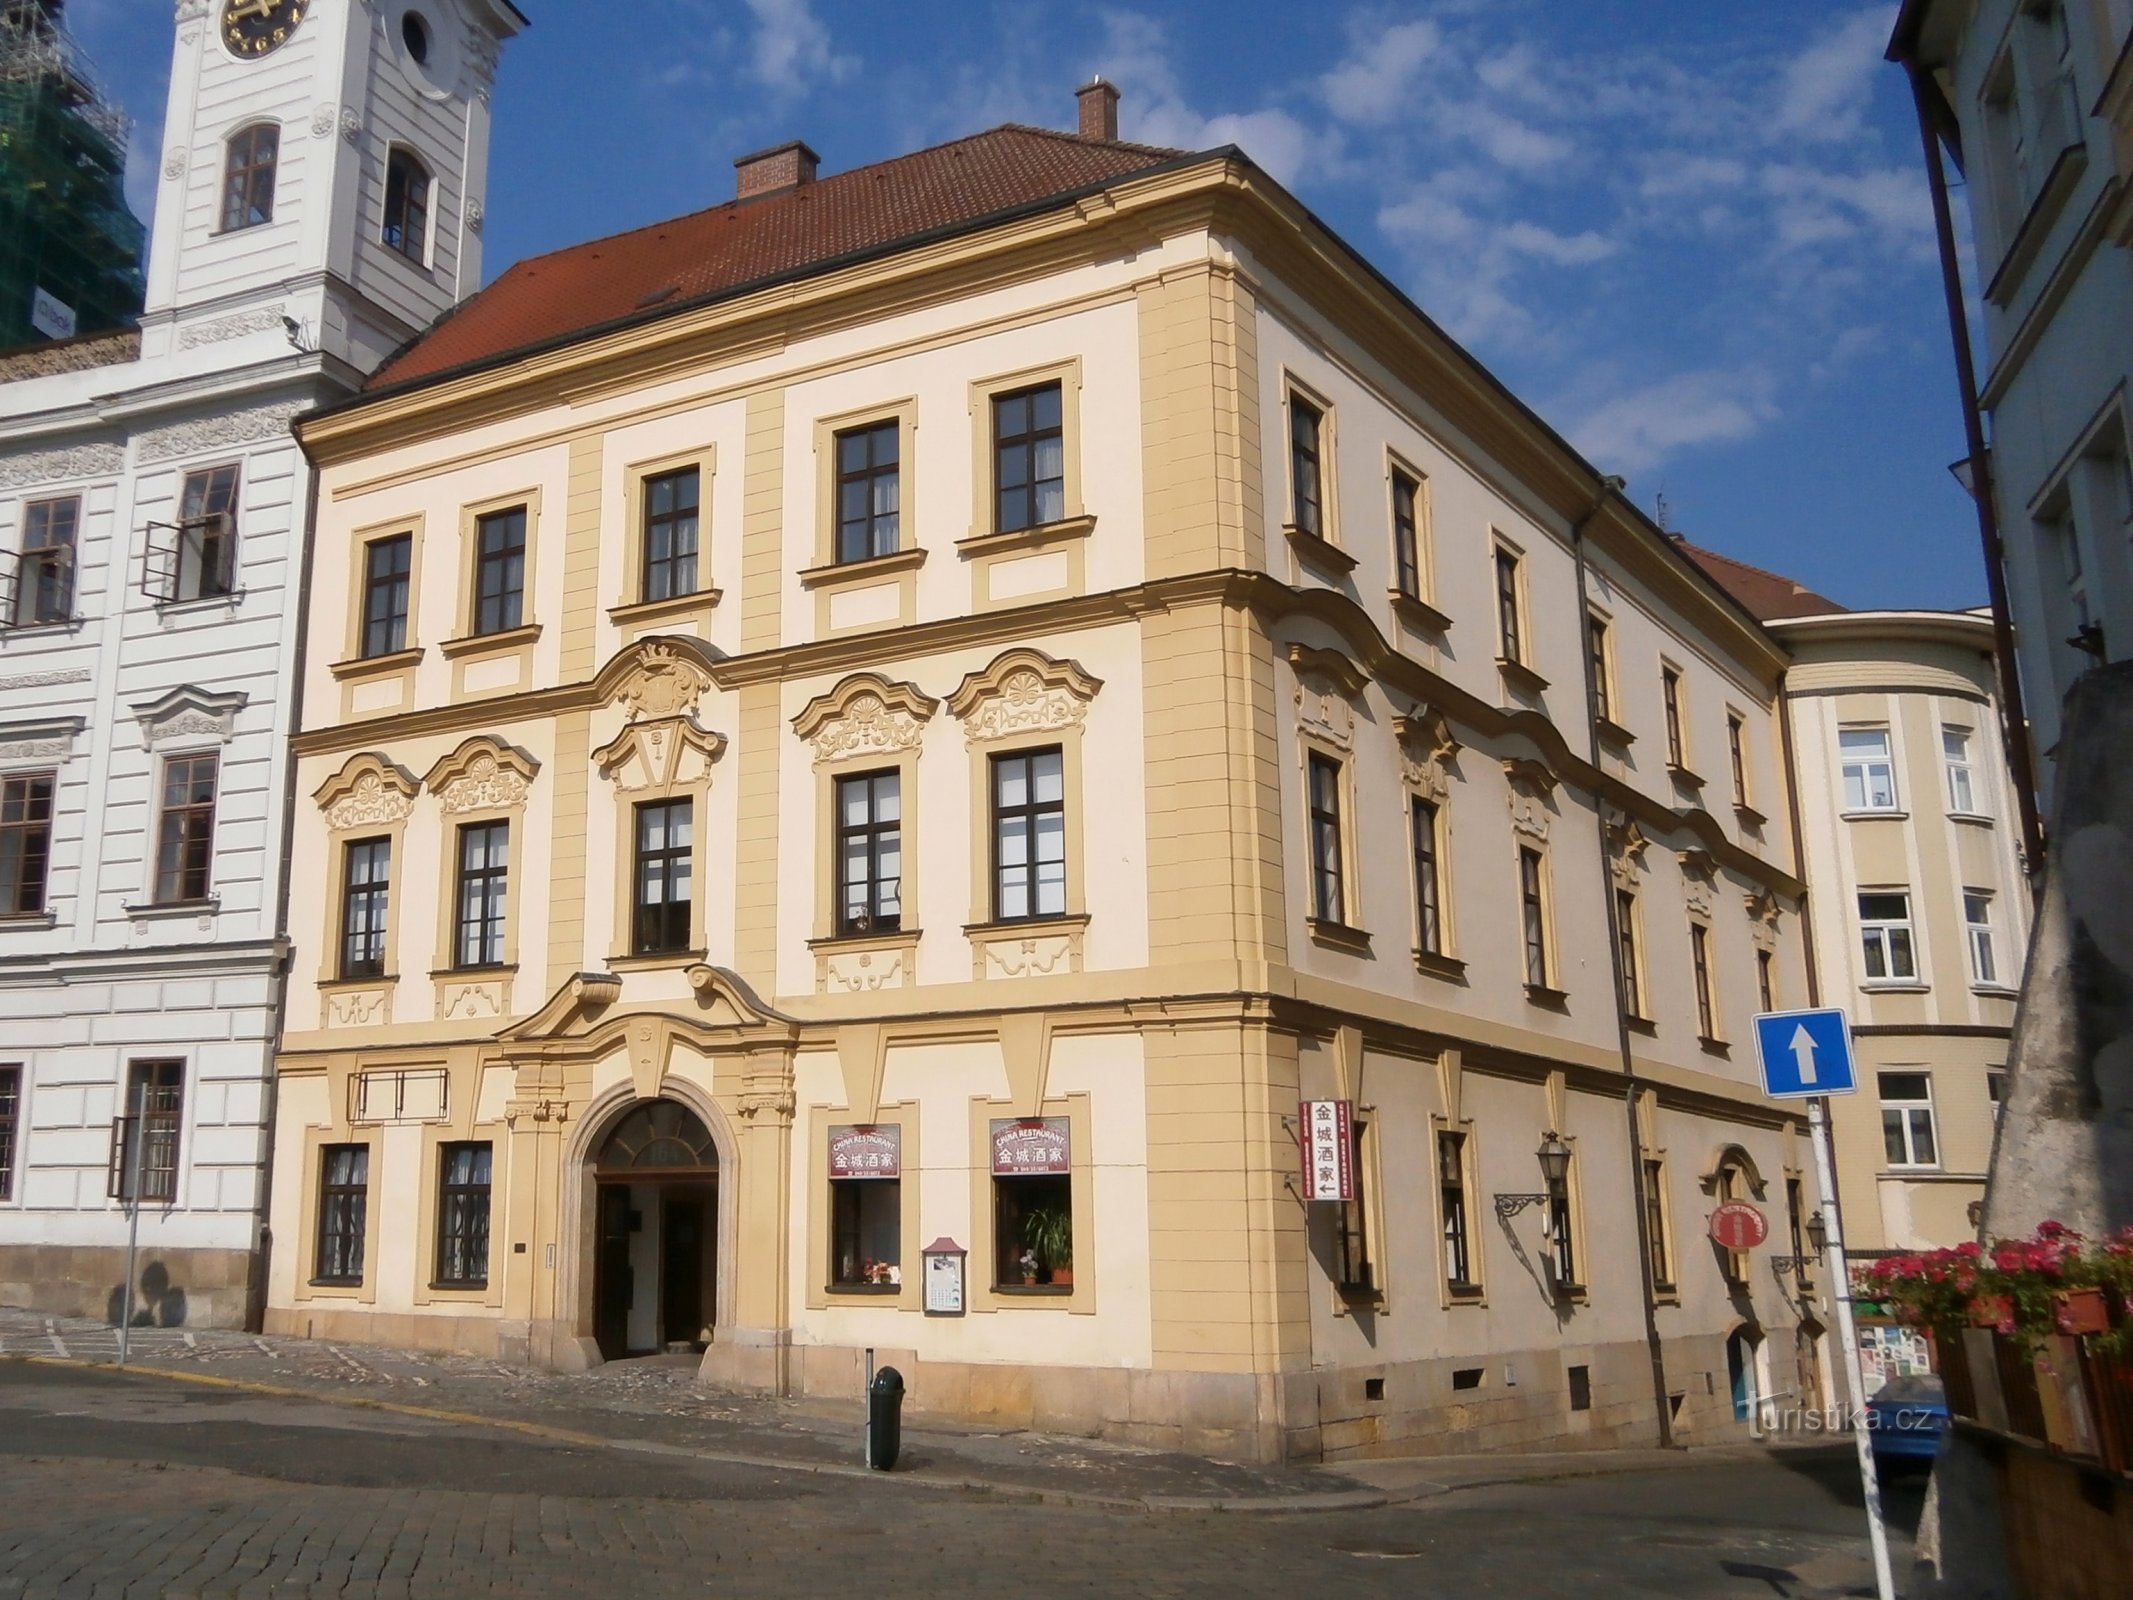 Velké náměstí čp. 164 (Hradec Králové, 8.7.2014)